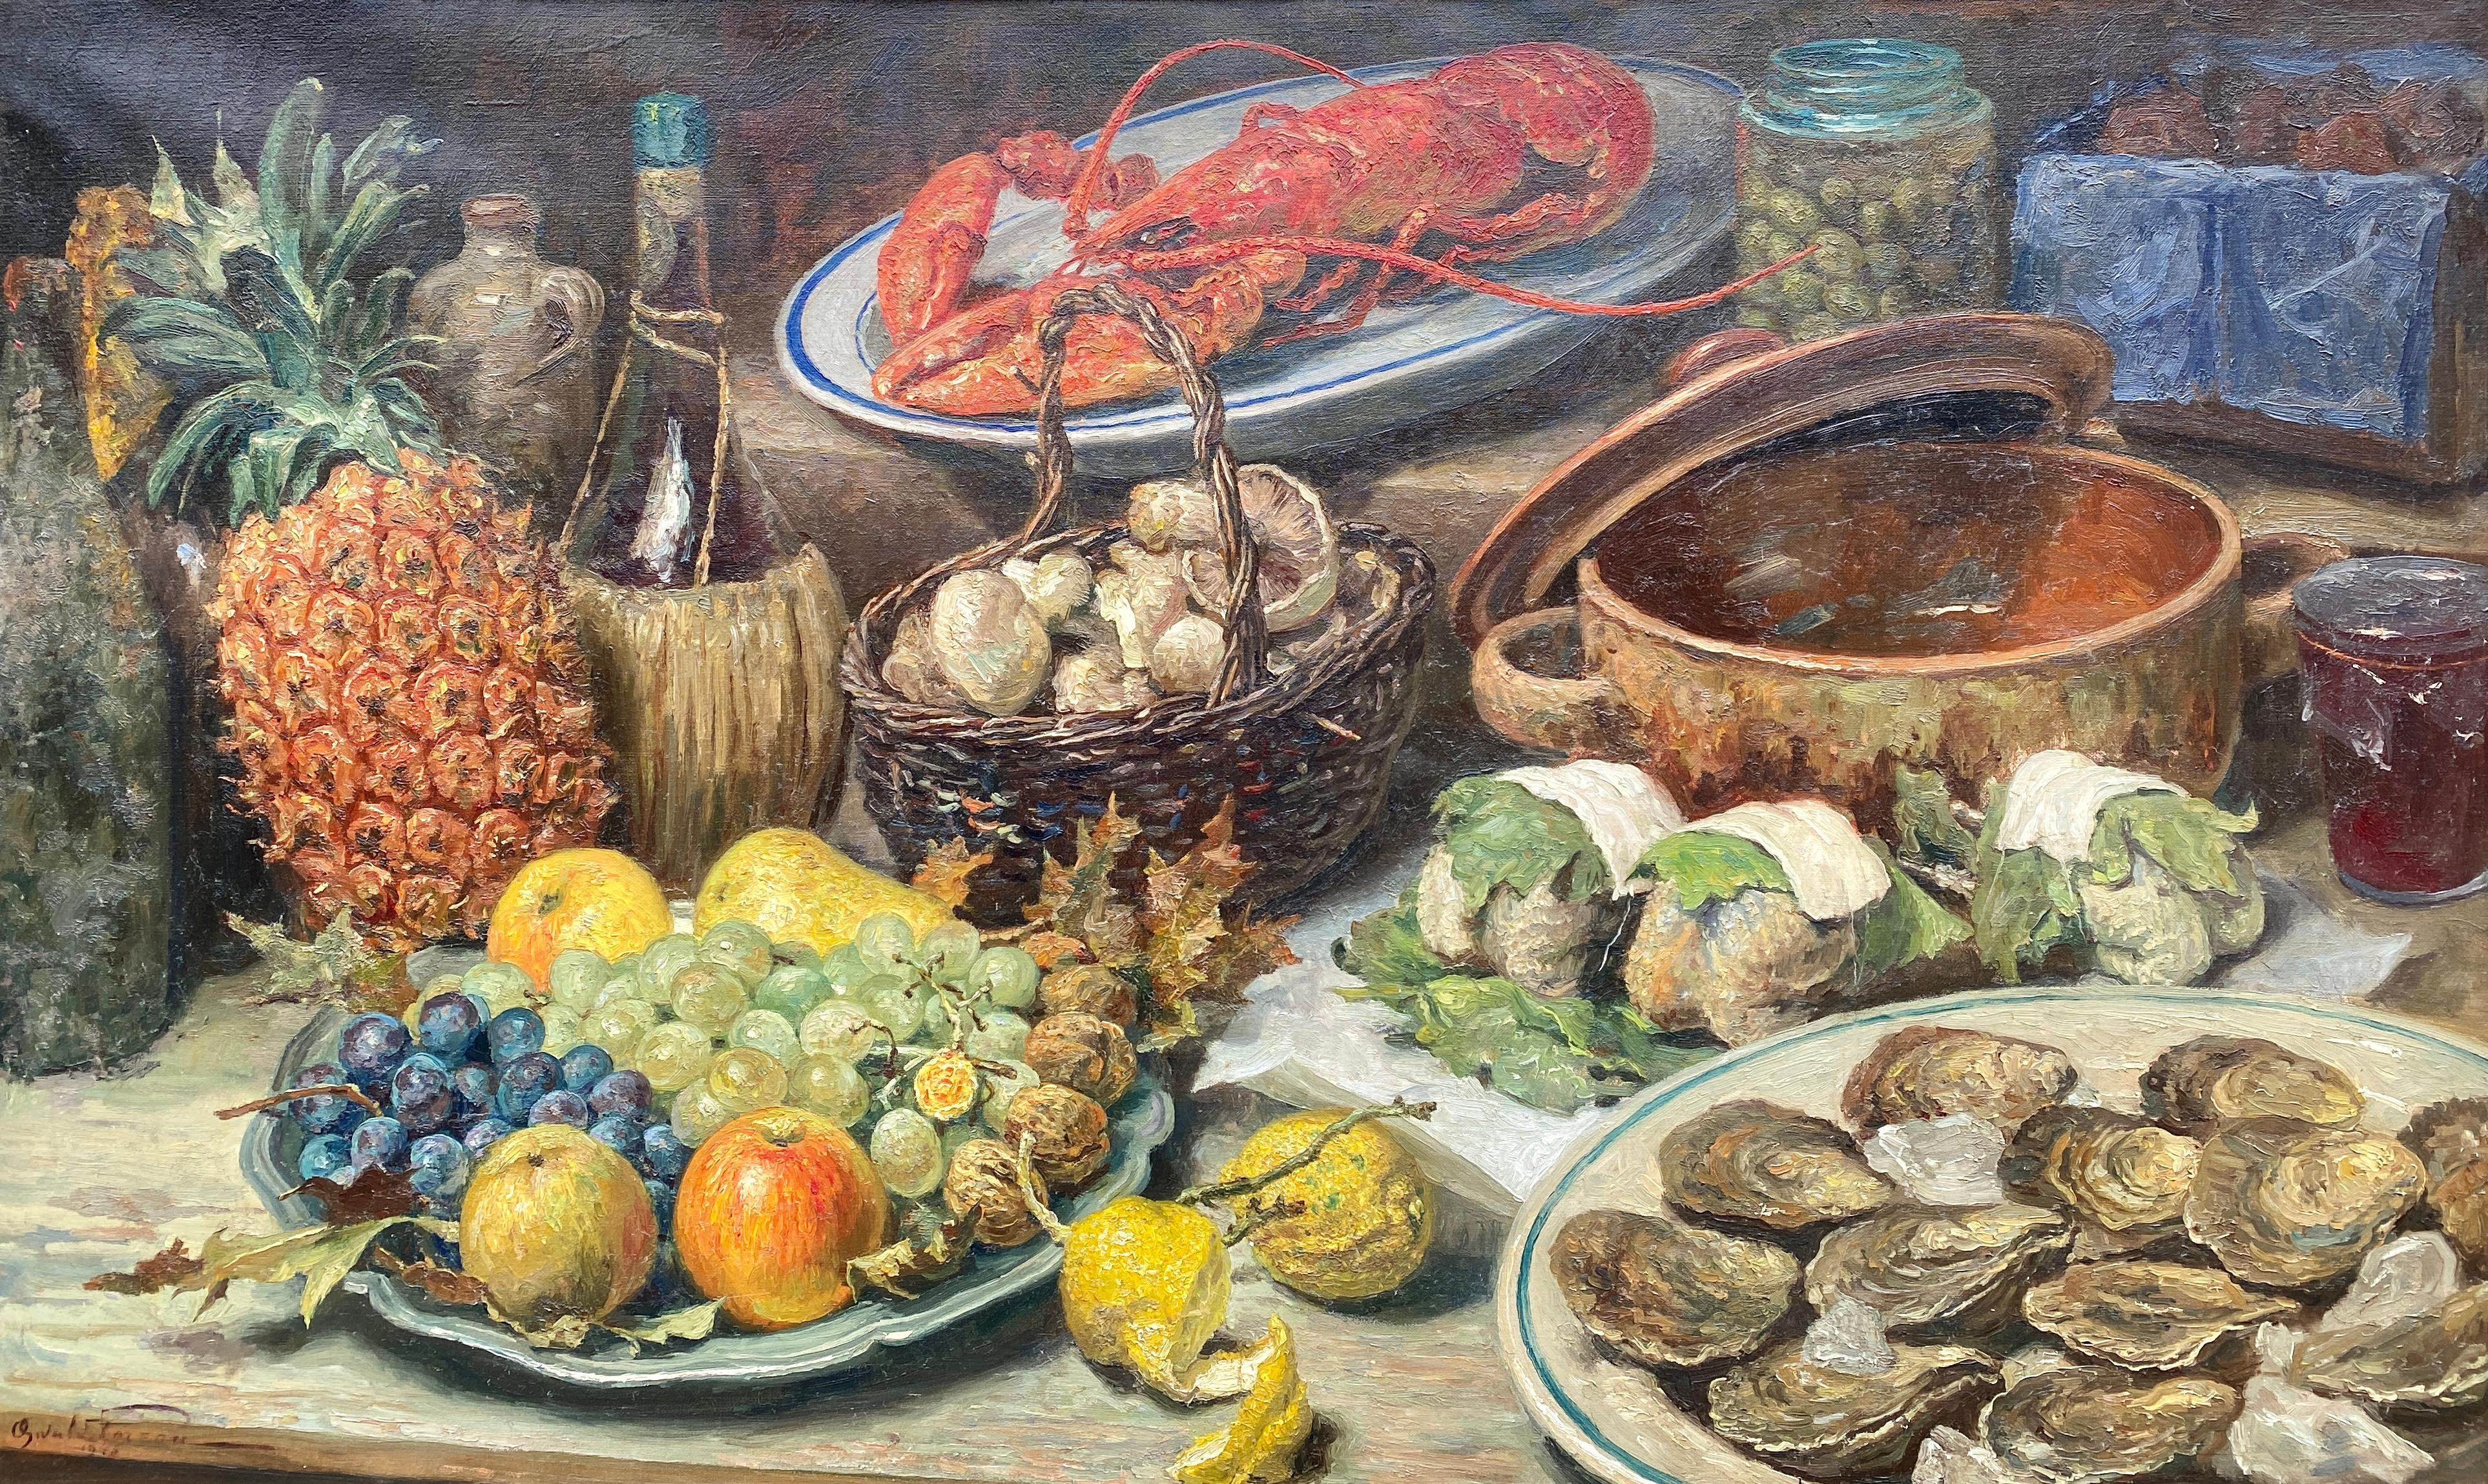 Un repas délicieux, Oswald Poreau, Schaerbeek 1877 - 1955 Waterloo - Painting de Poreau Oswald